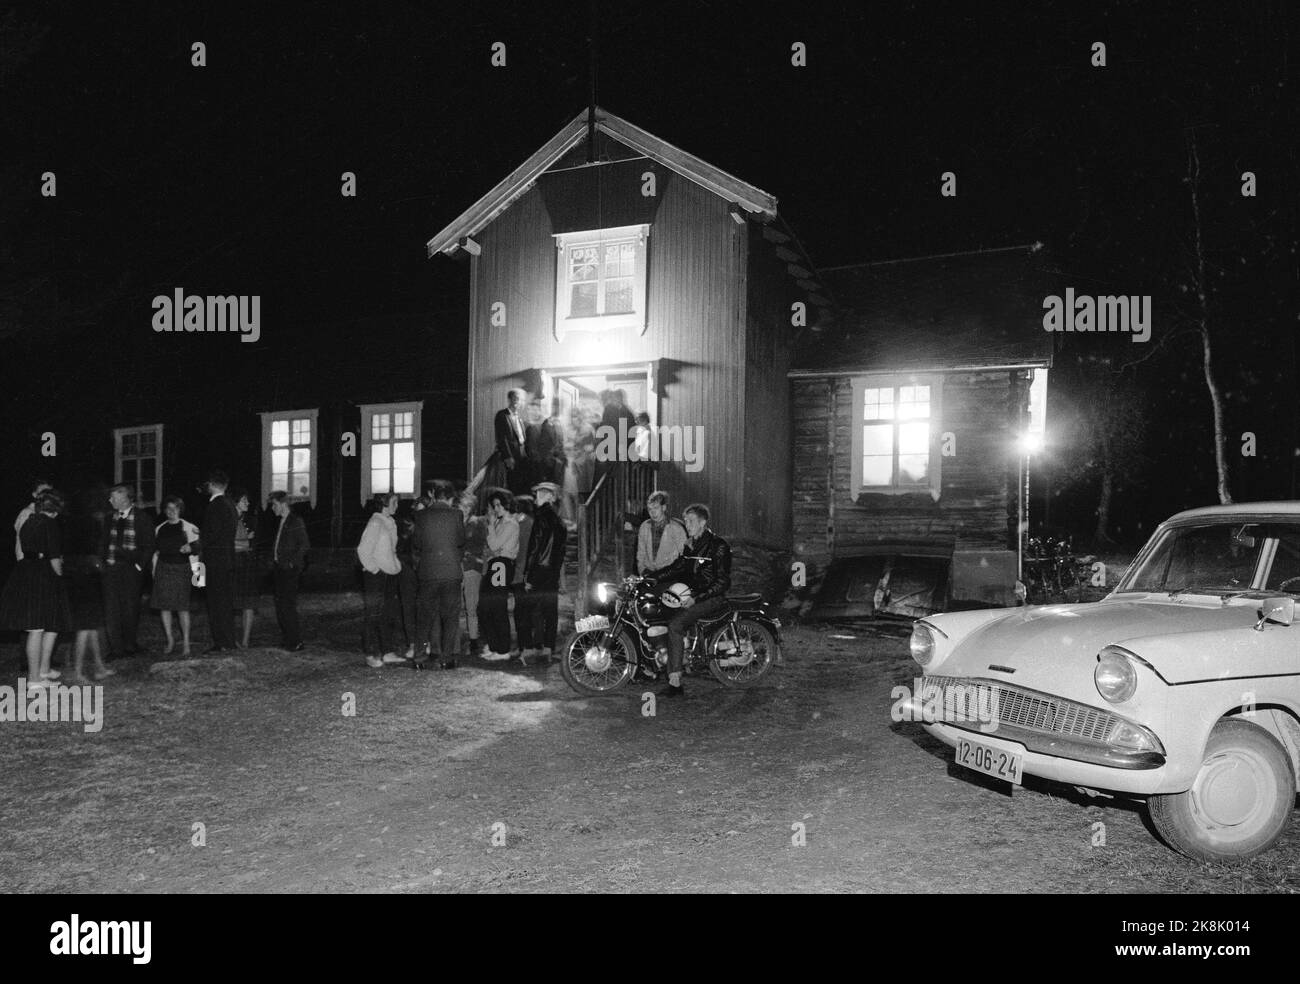 Røros Oktober 1960 dans på lokalet i Røros-traktene. Eksteriør AV forsamlingslokalet sordet med ungdom, motorsykler e biler utenfor. Foto: Storløkken / Aktuell / NTB Foto Stock